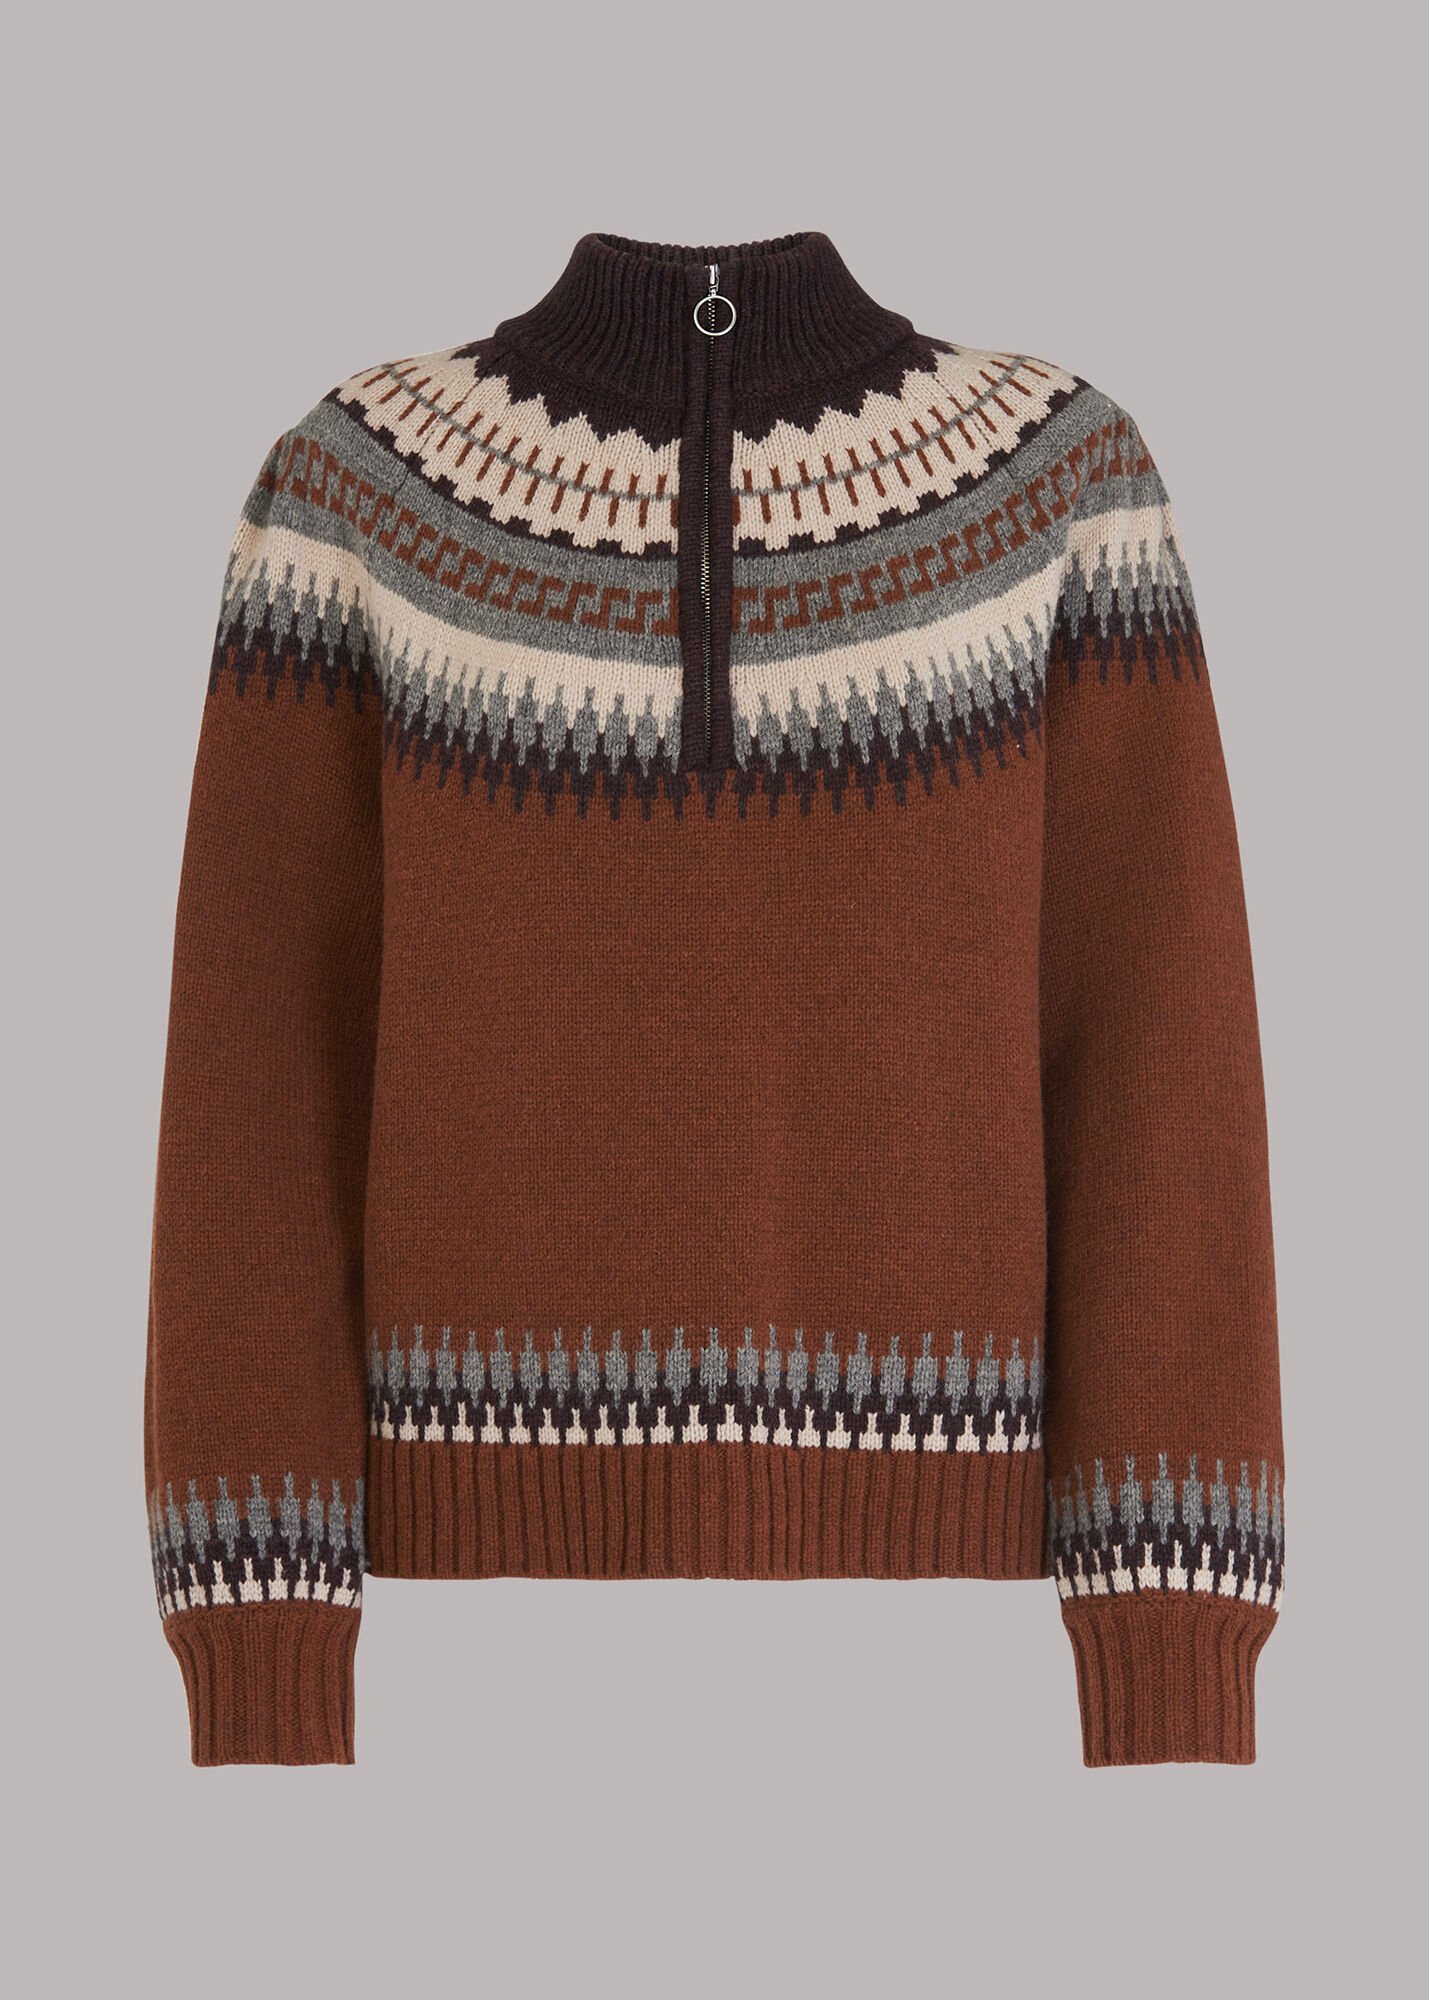 4 WHISTLES Fairisle Zip Sweater €109, 